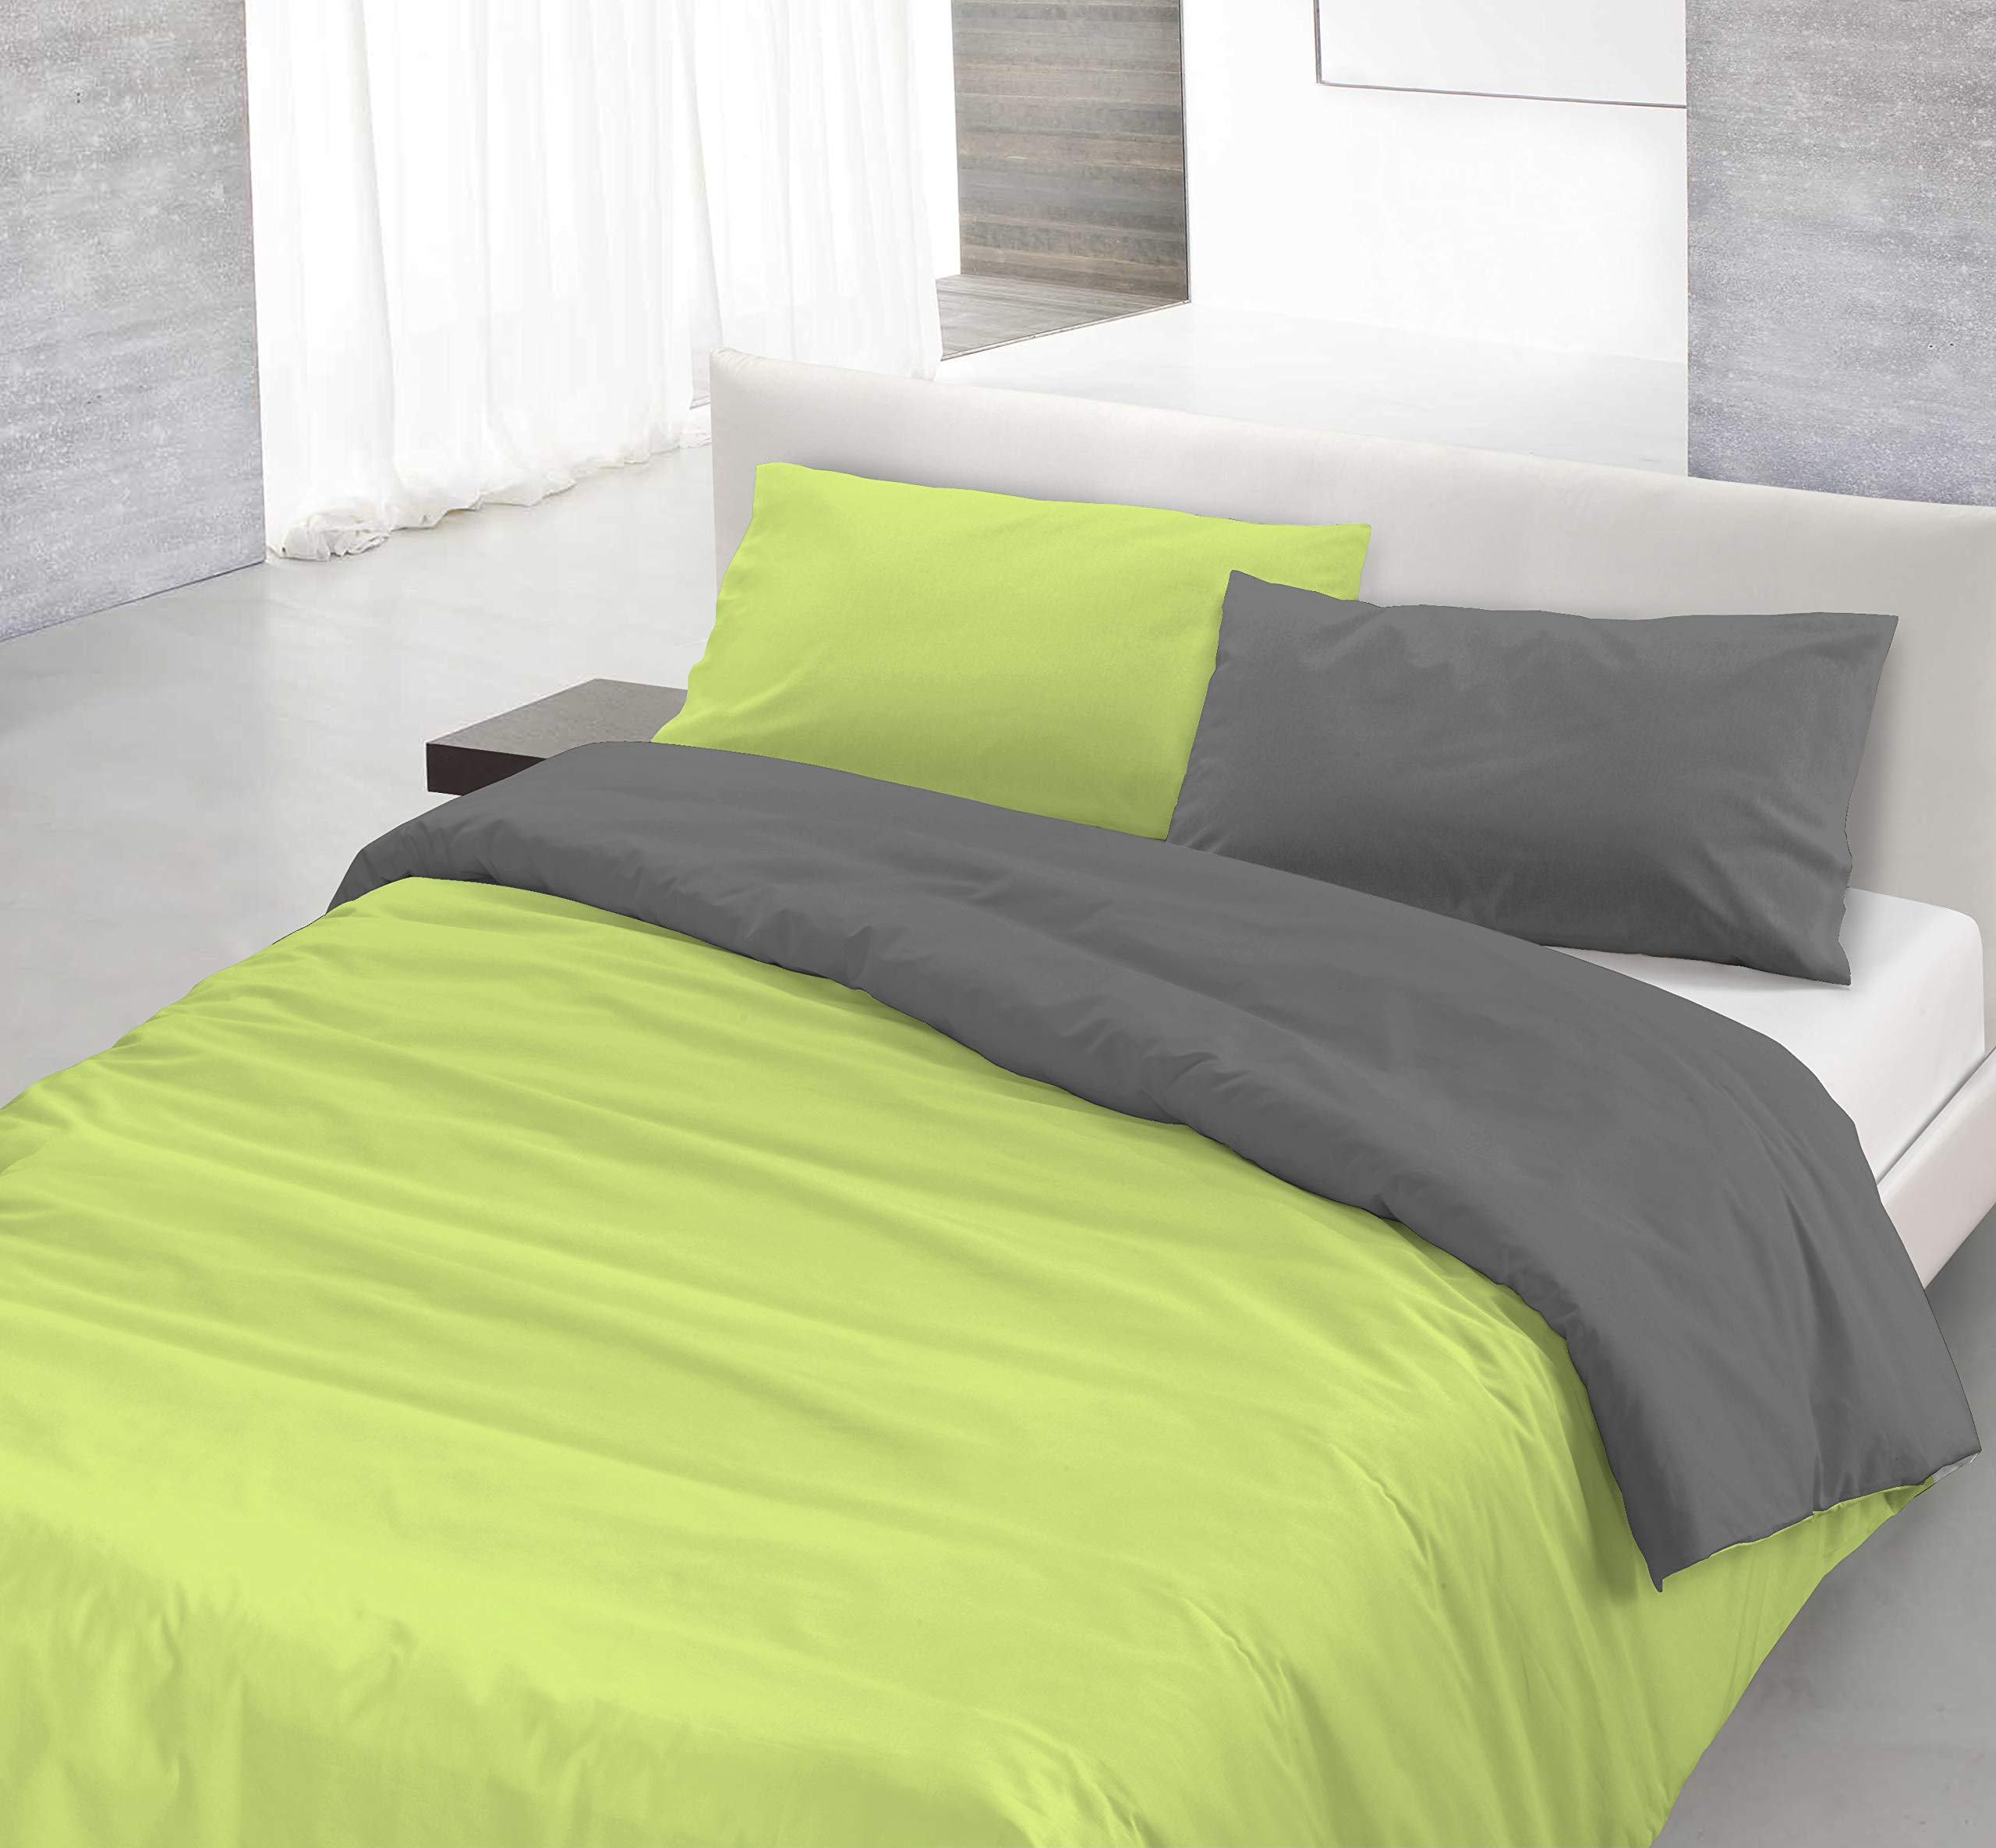 Italian Bed Linen Natural Color Doubleface Bettbezug, 100% Baumwolle, Säure grün/Rauch, Einzelne